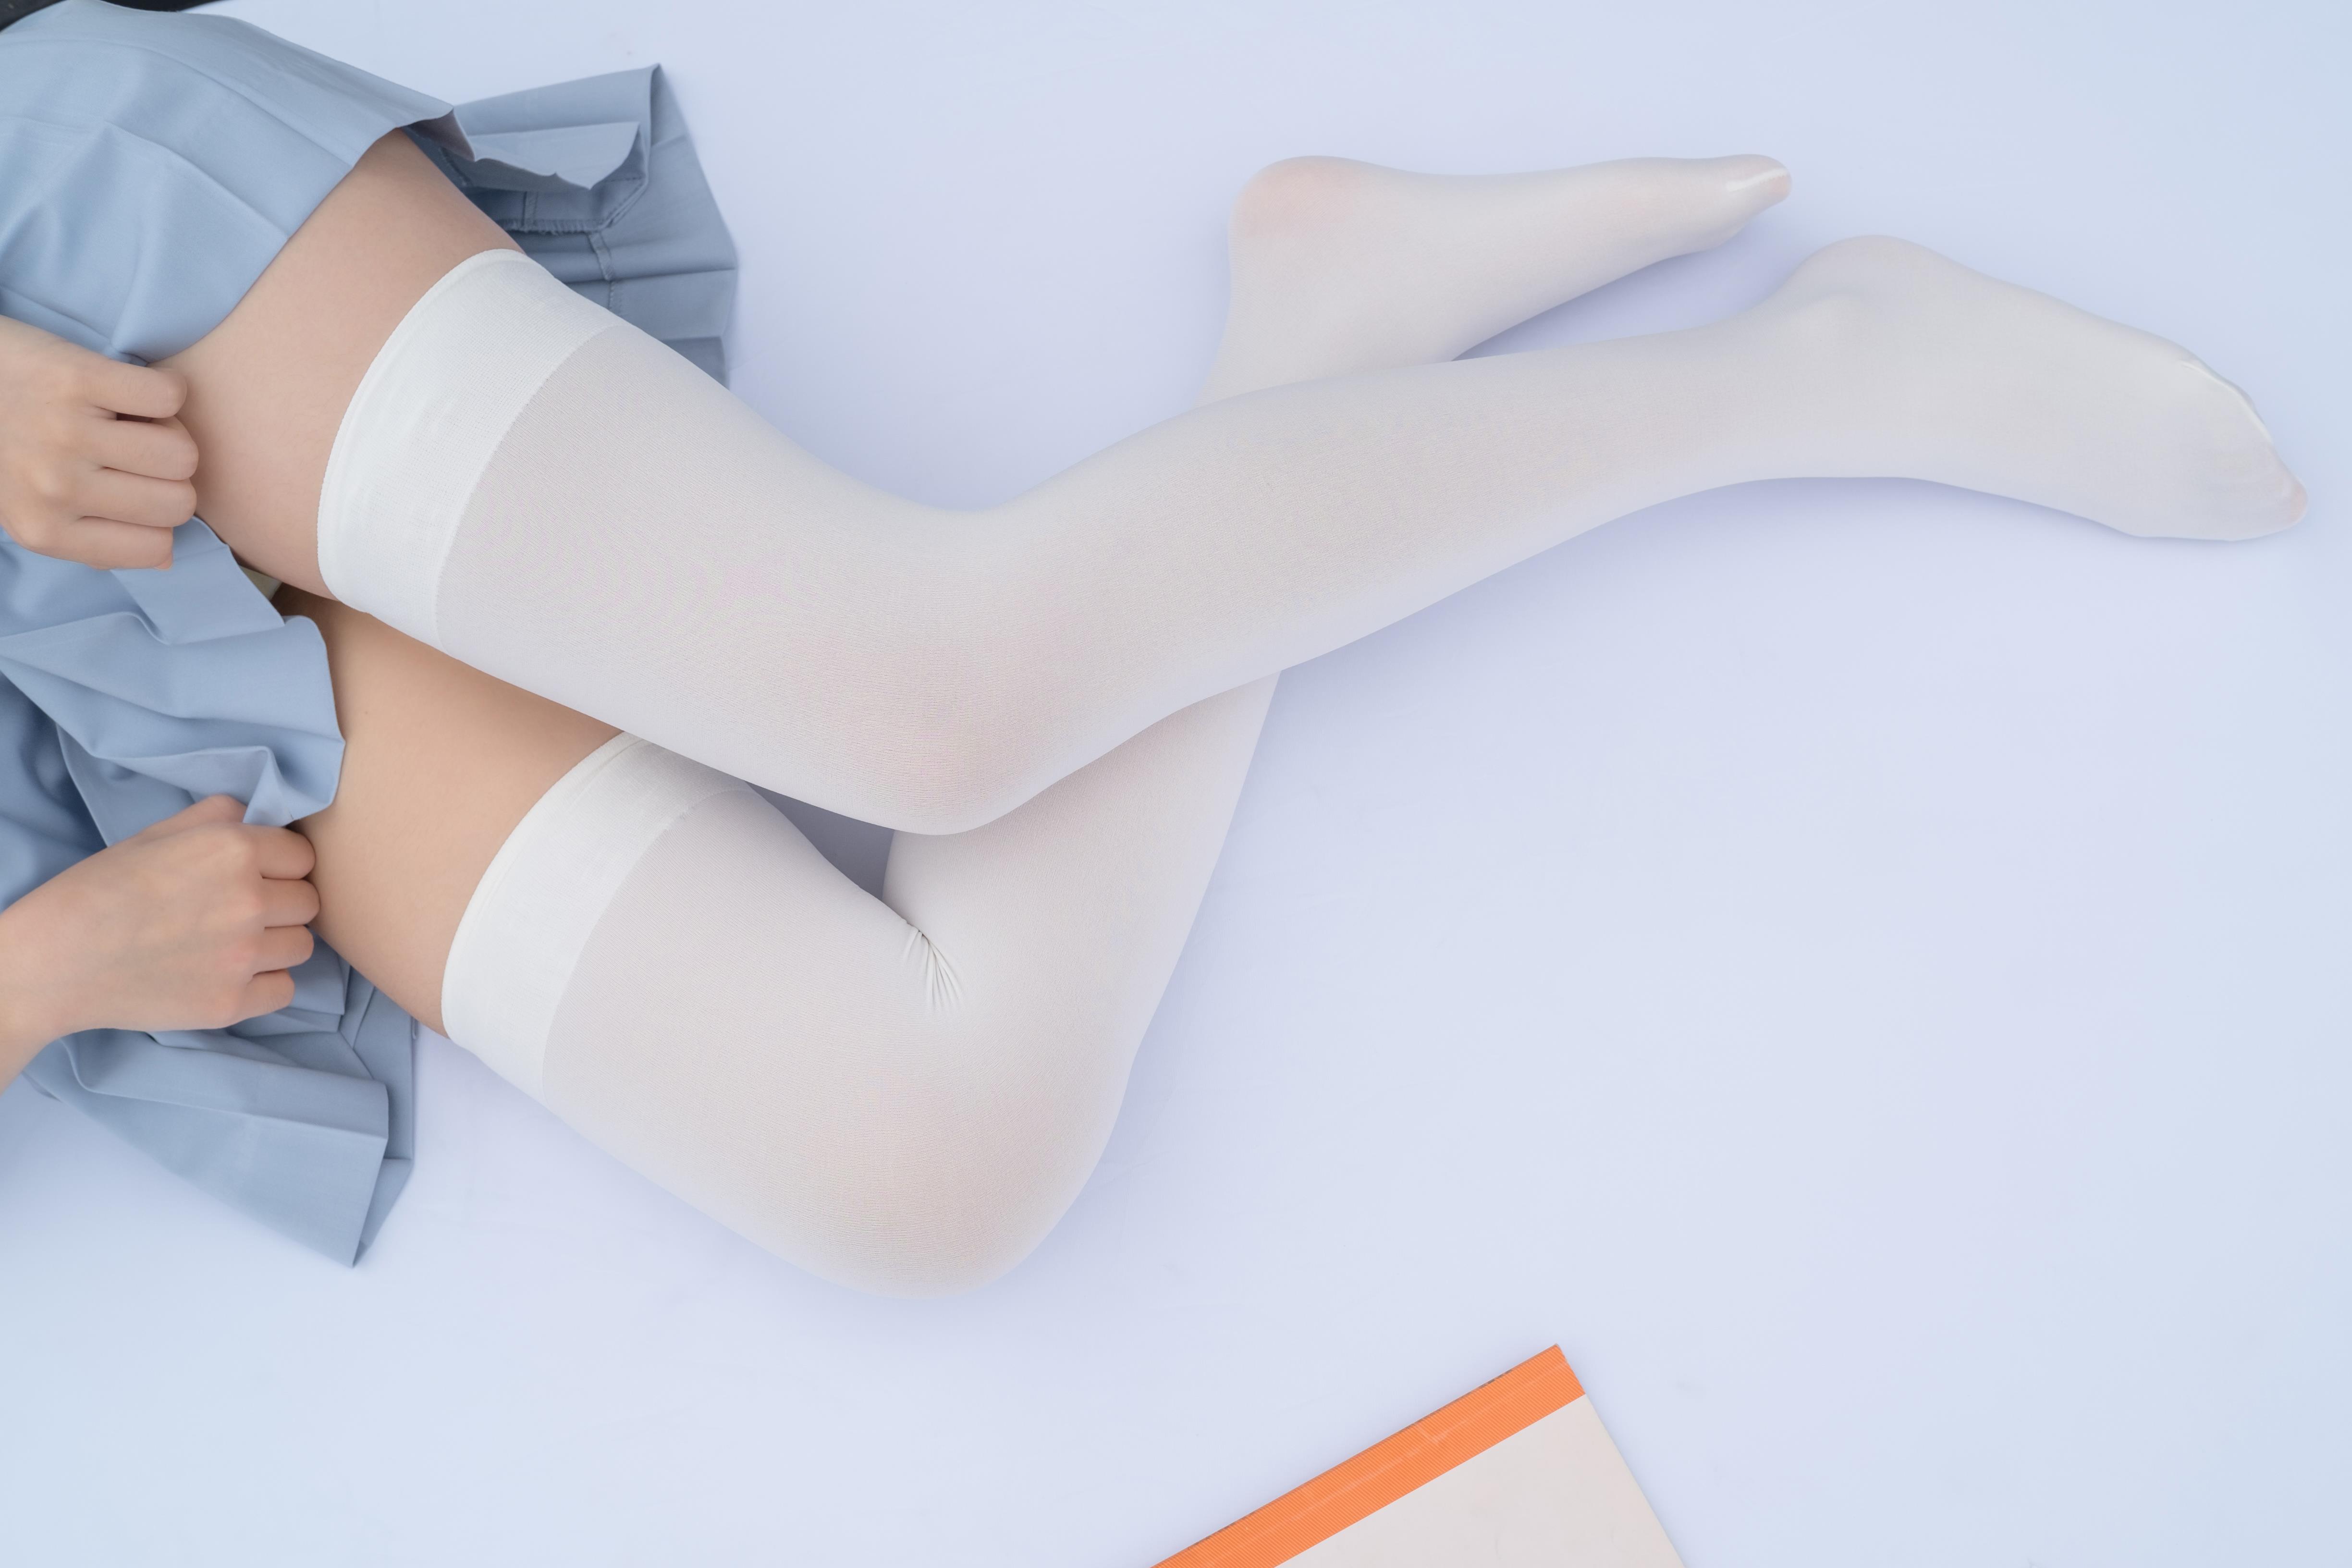 [森萝财团]萝莉R15-036 淡蓝色高中女生制服短裙加白色丝袜美腿玉足性感私房写真集,